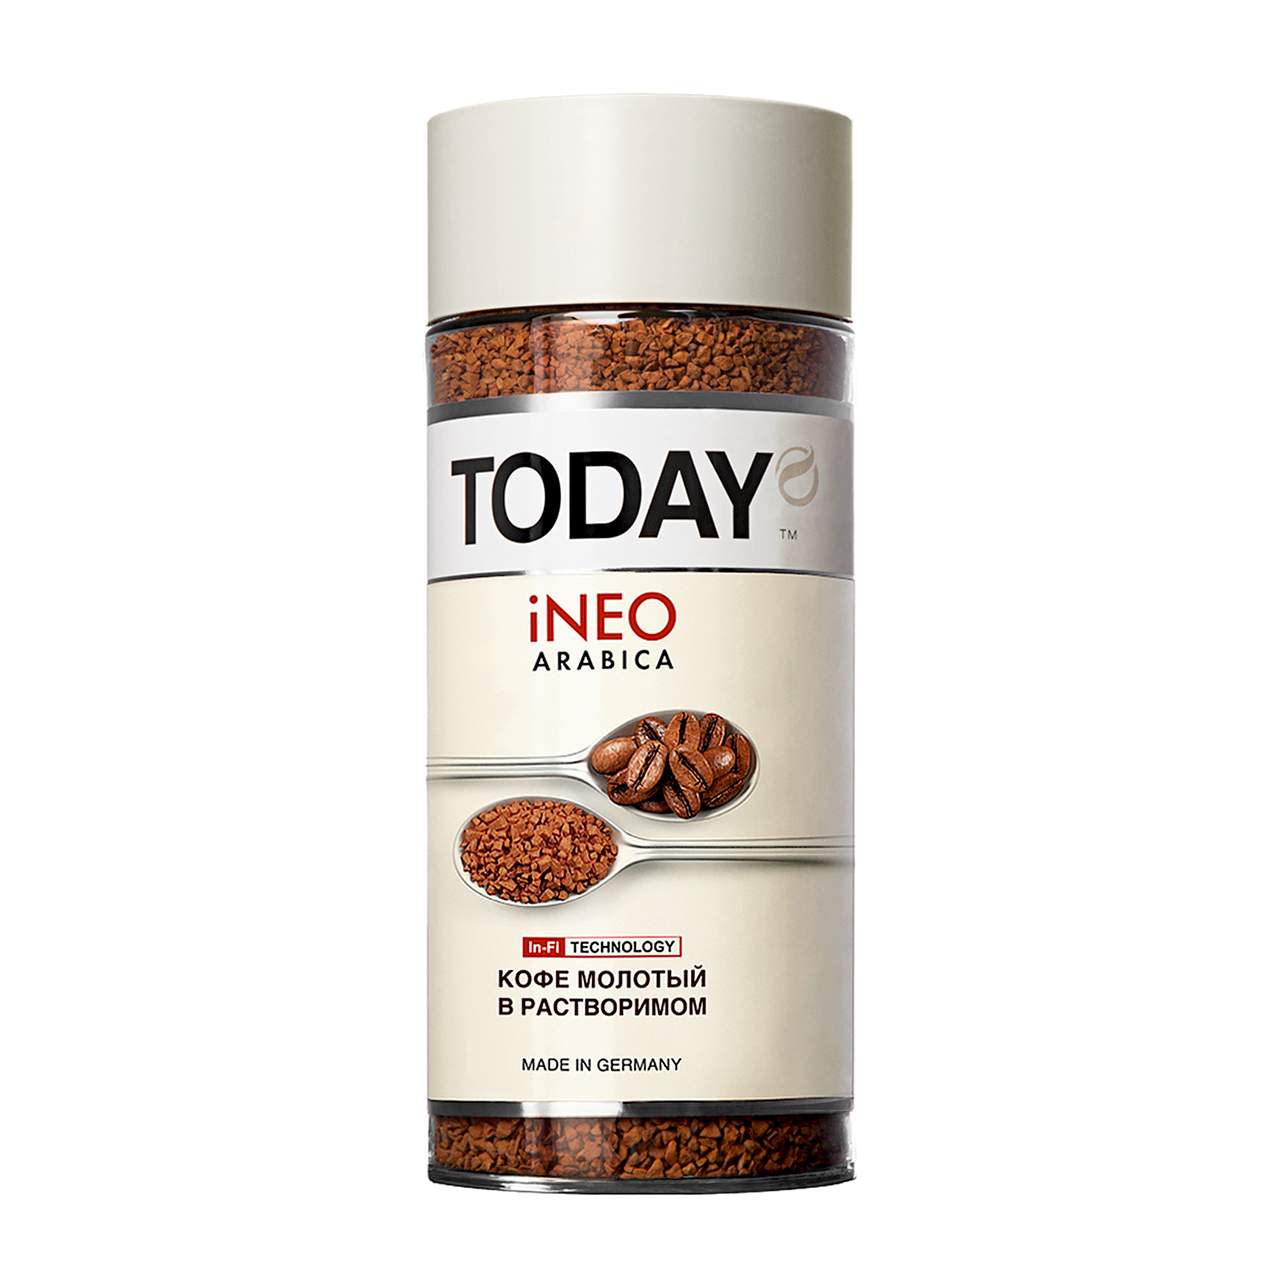 Кофе TODAY In-Fi (INEO) сублимированный молотый в растворимом 95г. - отзывы покупателей на маркетплейсе Мегамаркет | Артикул: 100023256451